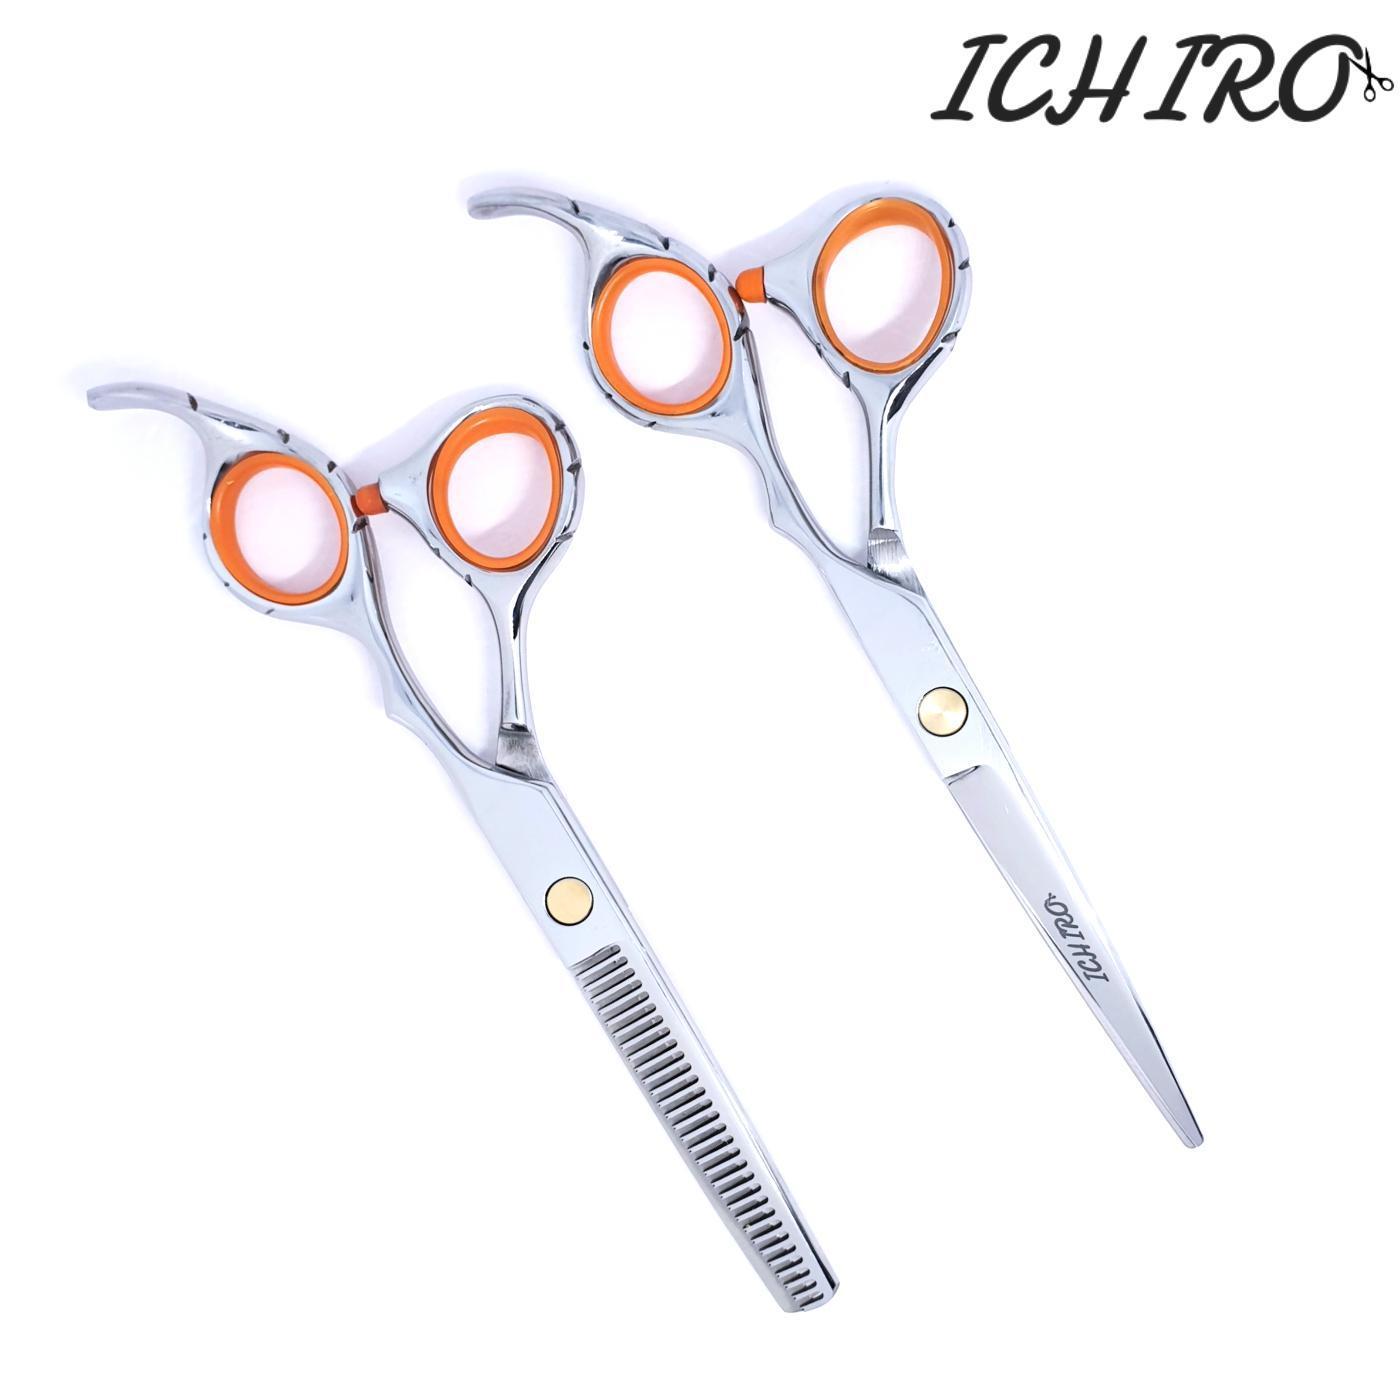 The Ichiro Relax Hair Scissor Kit